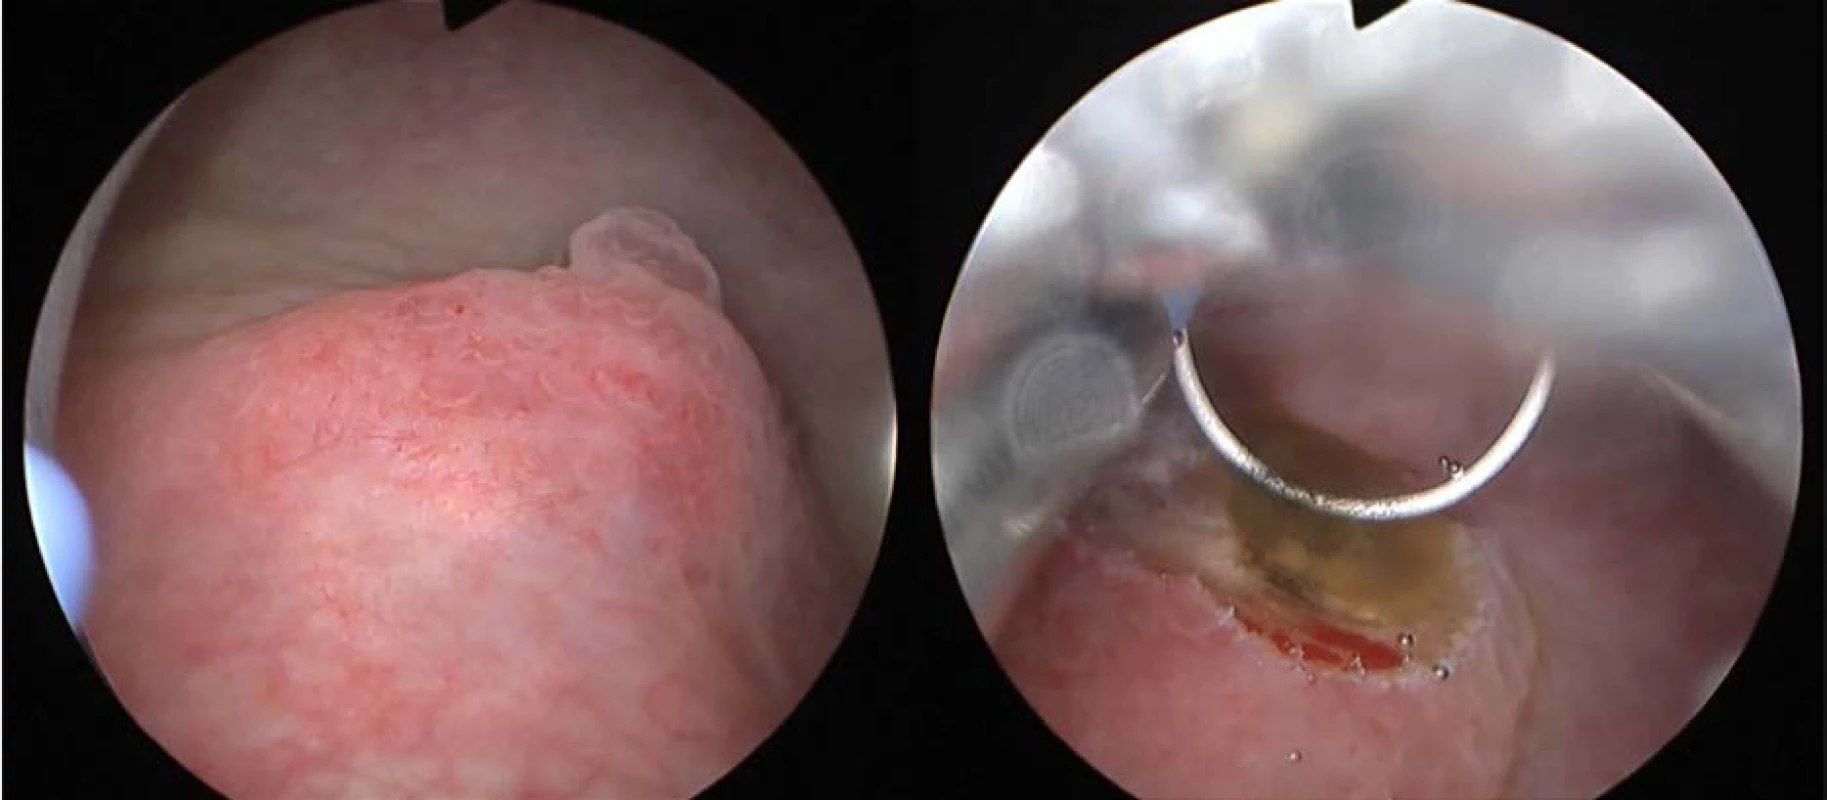 Cystoskopie a TUR biopsie: tumorózní útvar na zadní stěně močového měchýře<br>
Fig. 2. Cystoscopy and TUR biopsy: tumorous formation on the bladder back wall